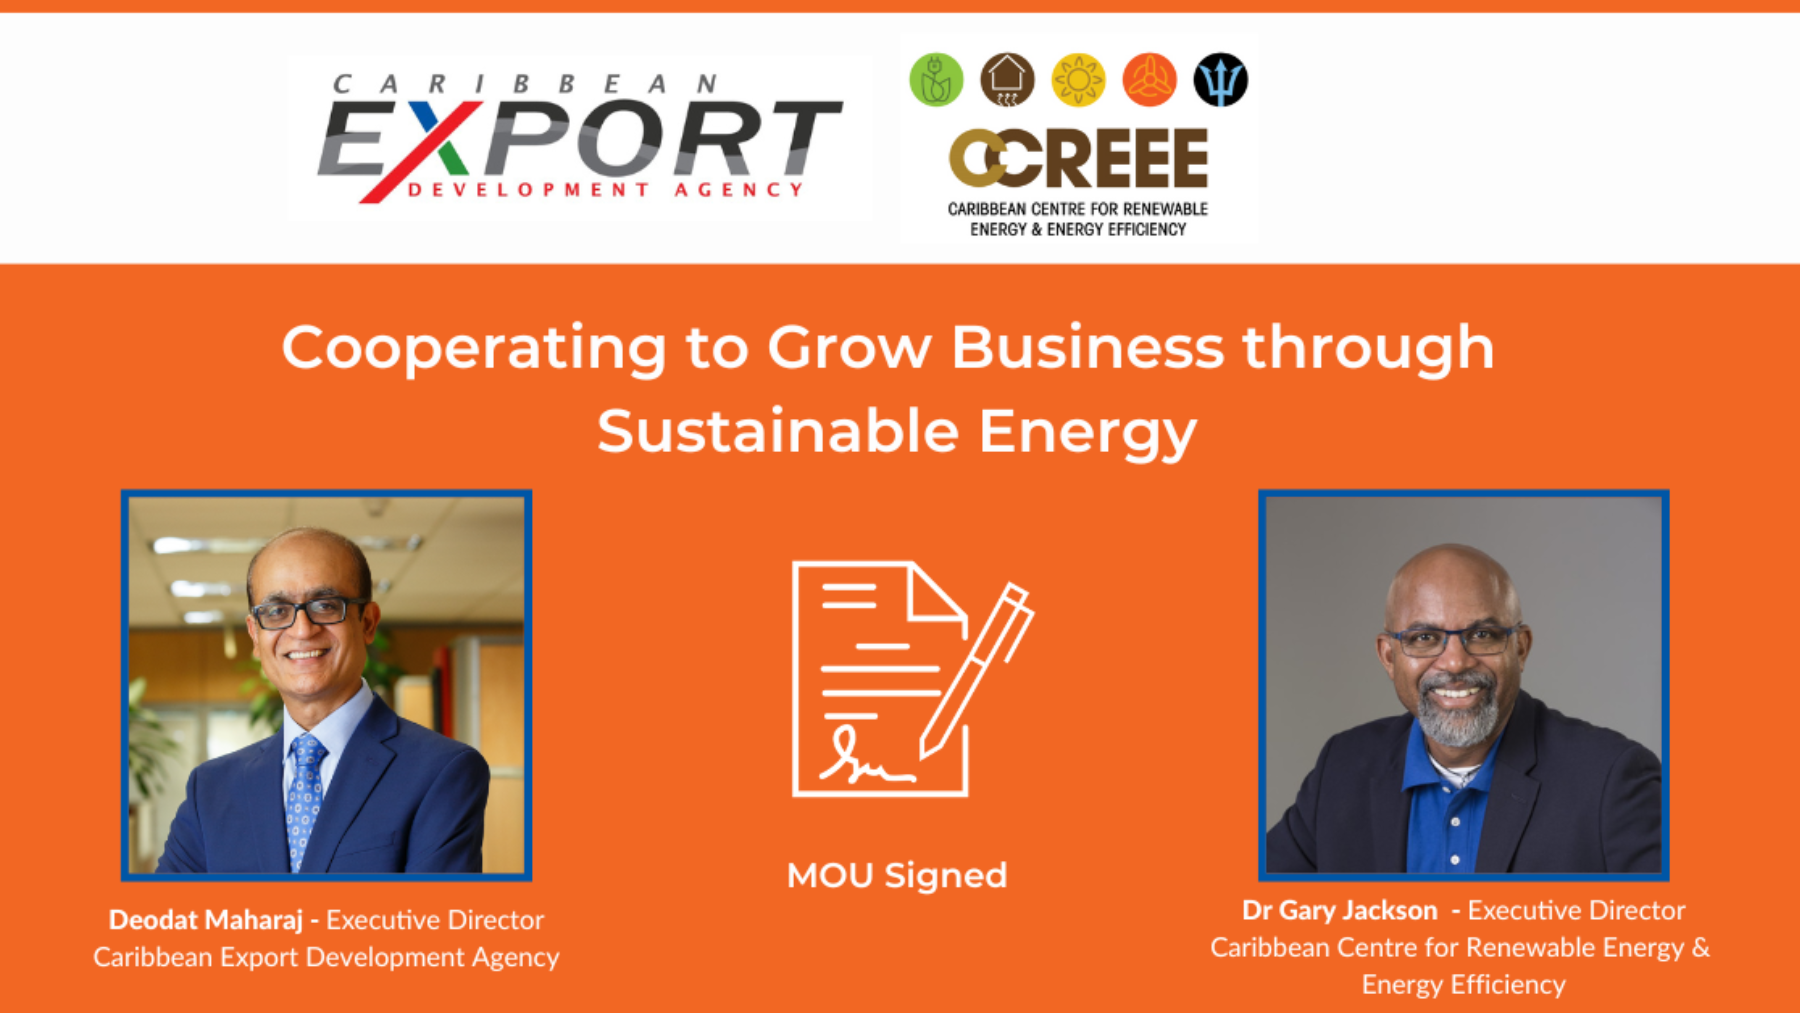 Caribbean Export et CCREEE coopèrent pour soutenir le développement de l’énergie durable et créer des emplois